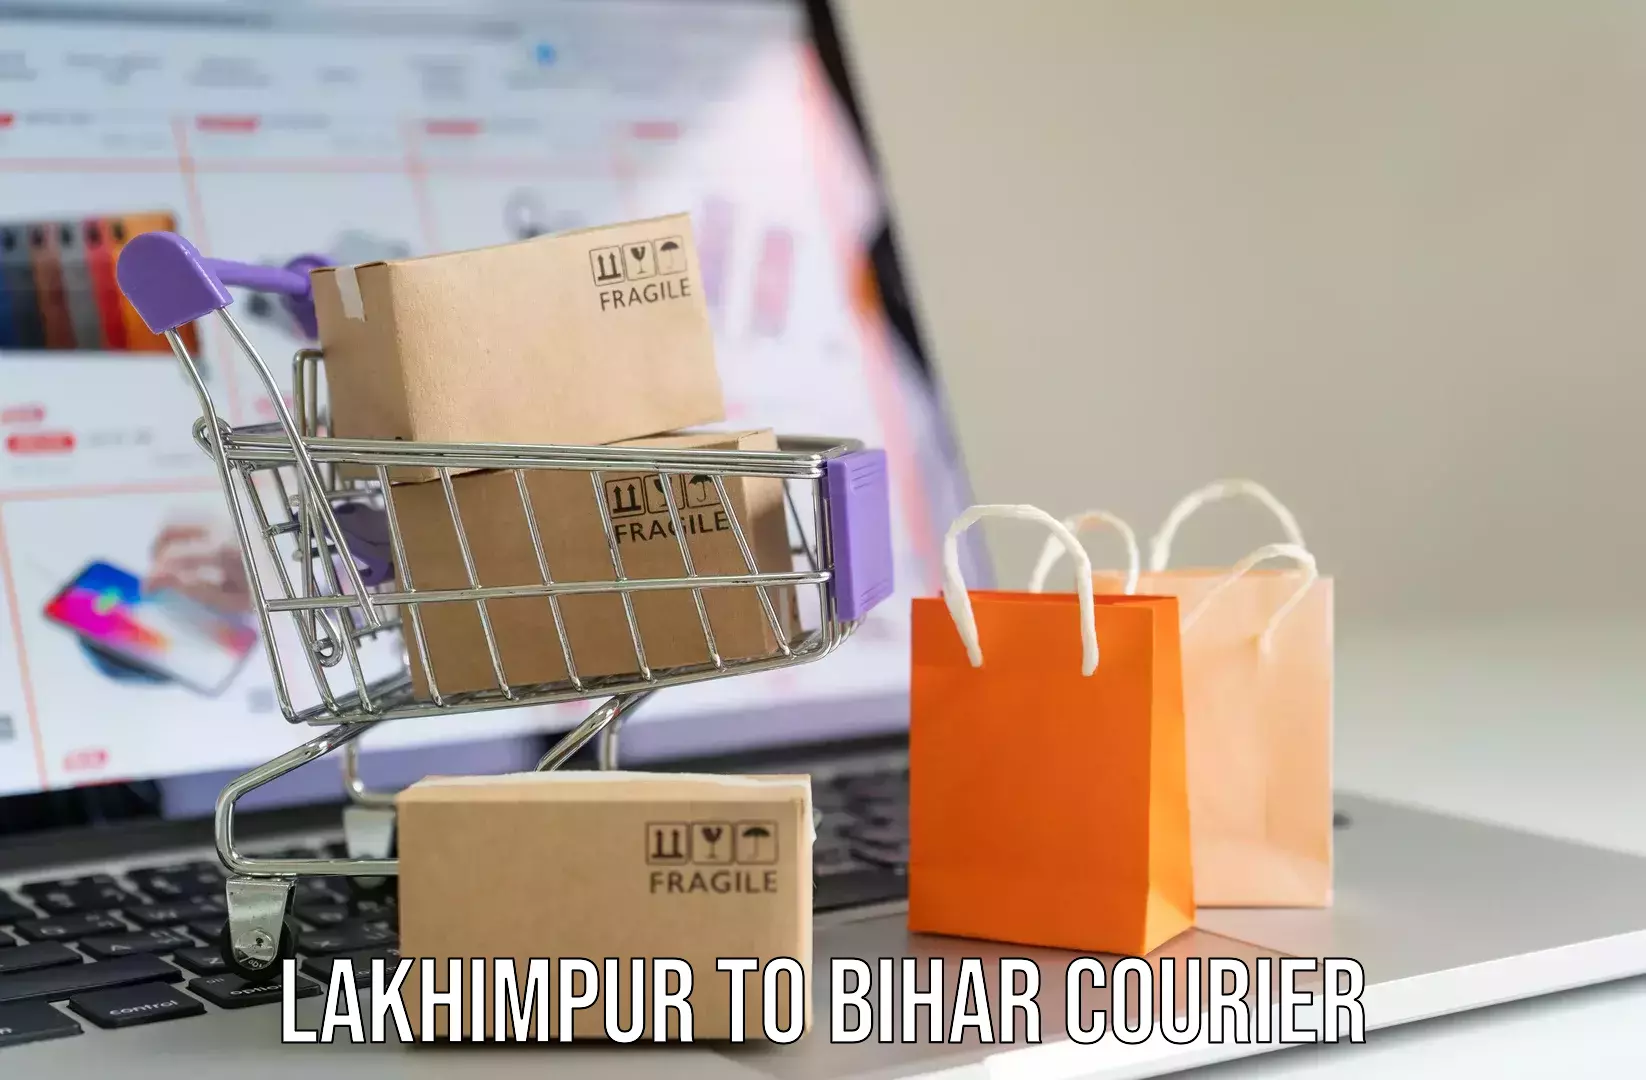 Luggage transit service Lakhimpur to Bihar